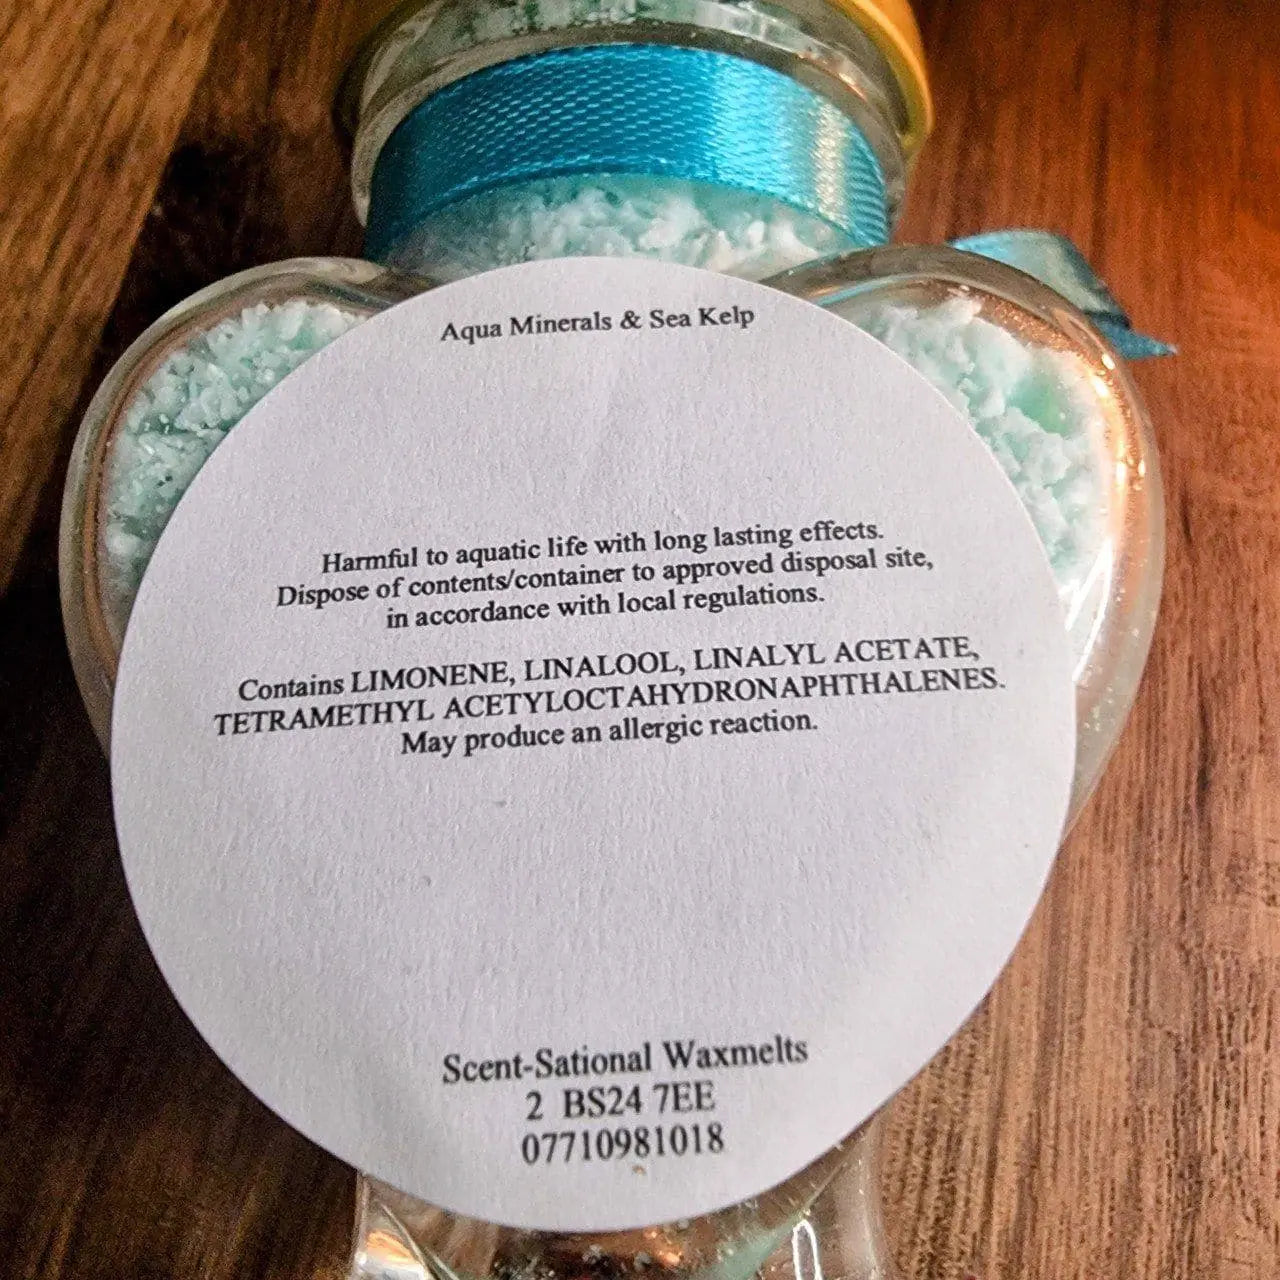 Auqa Minerals Sea Kelp Wax Melt Crumble Scent Sational Wax melts